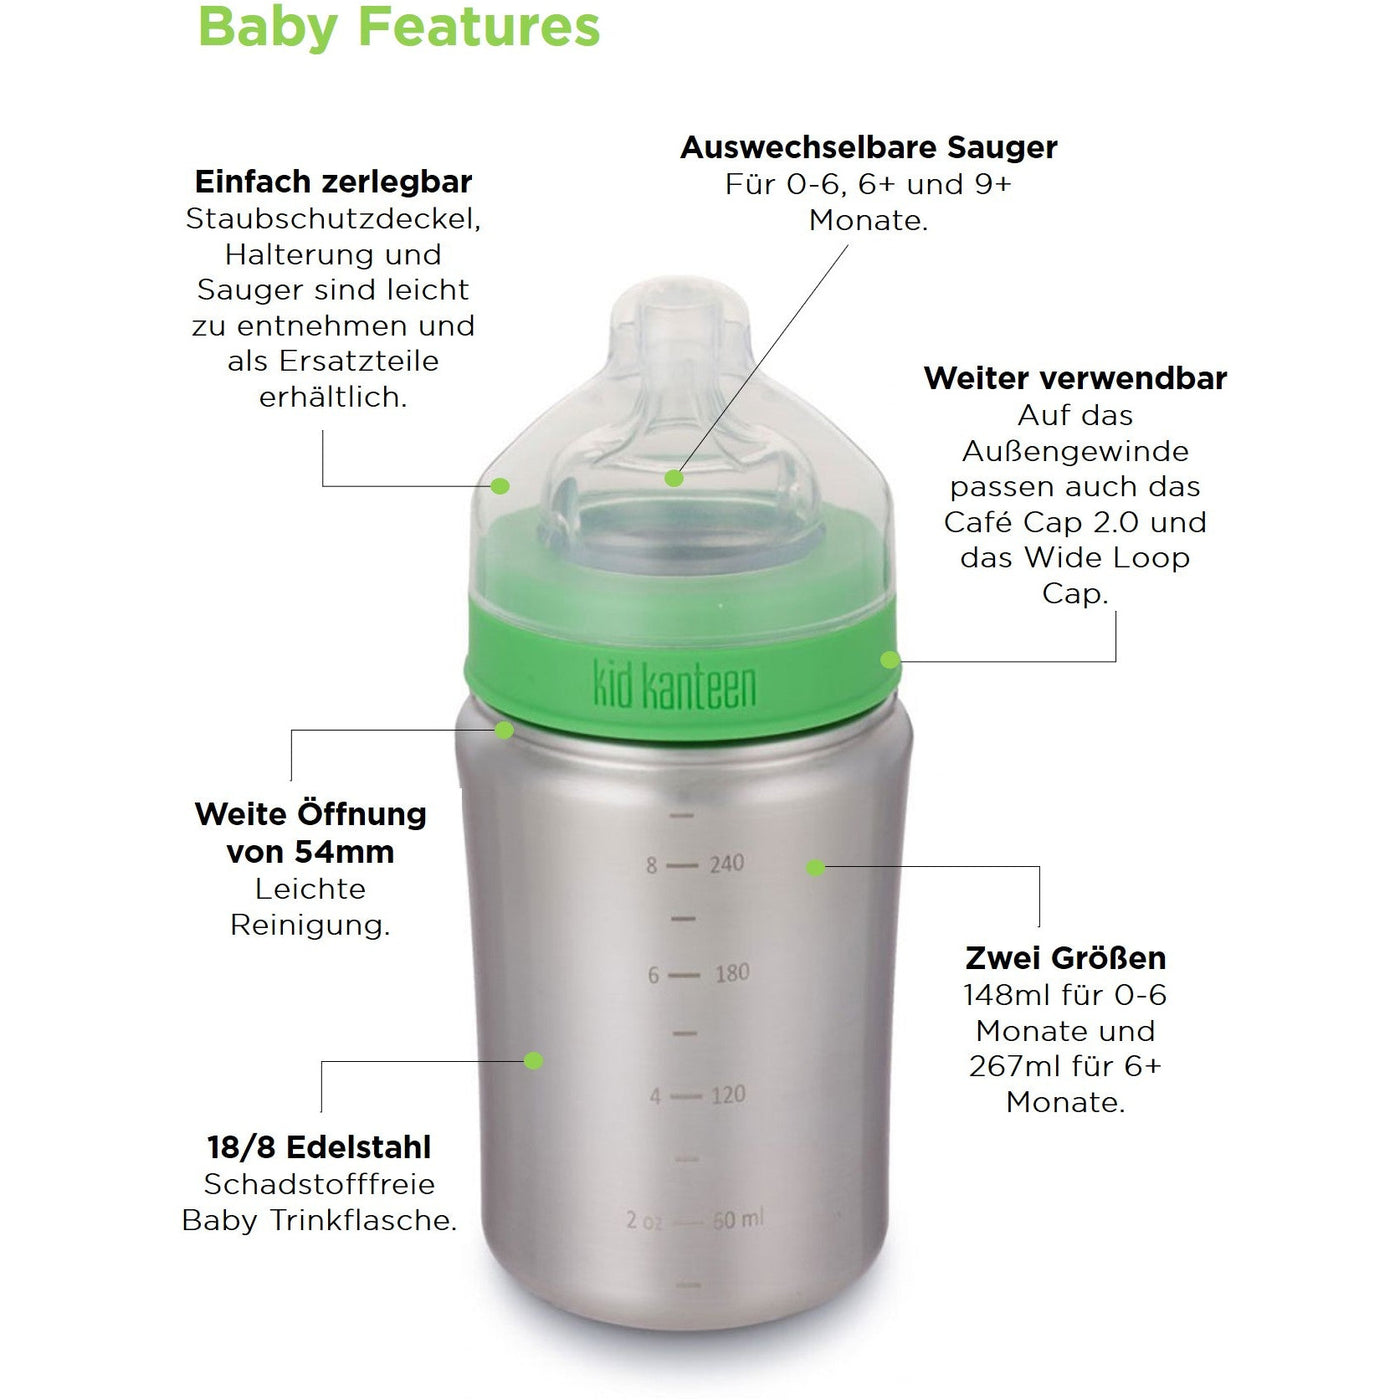 Edelstahl Babyflasche 266ml 6+ Monate mittlerer Trinkfluss